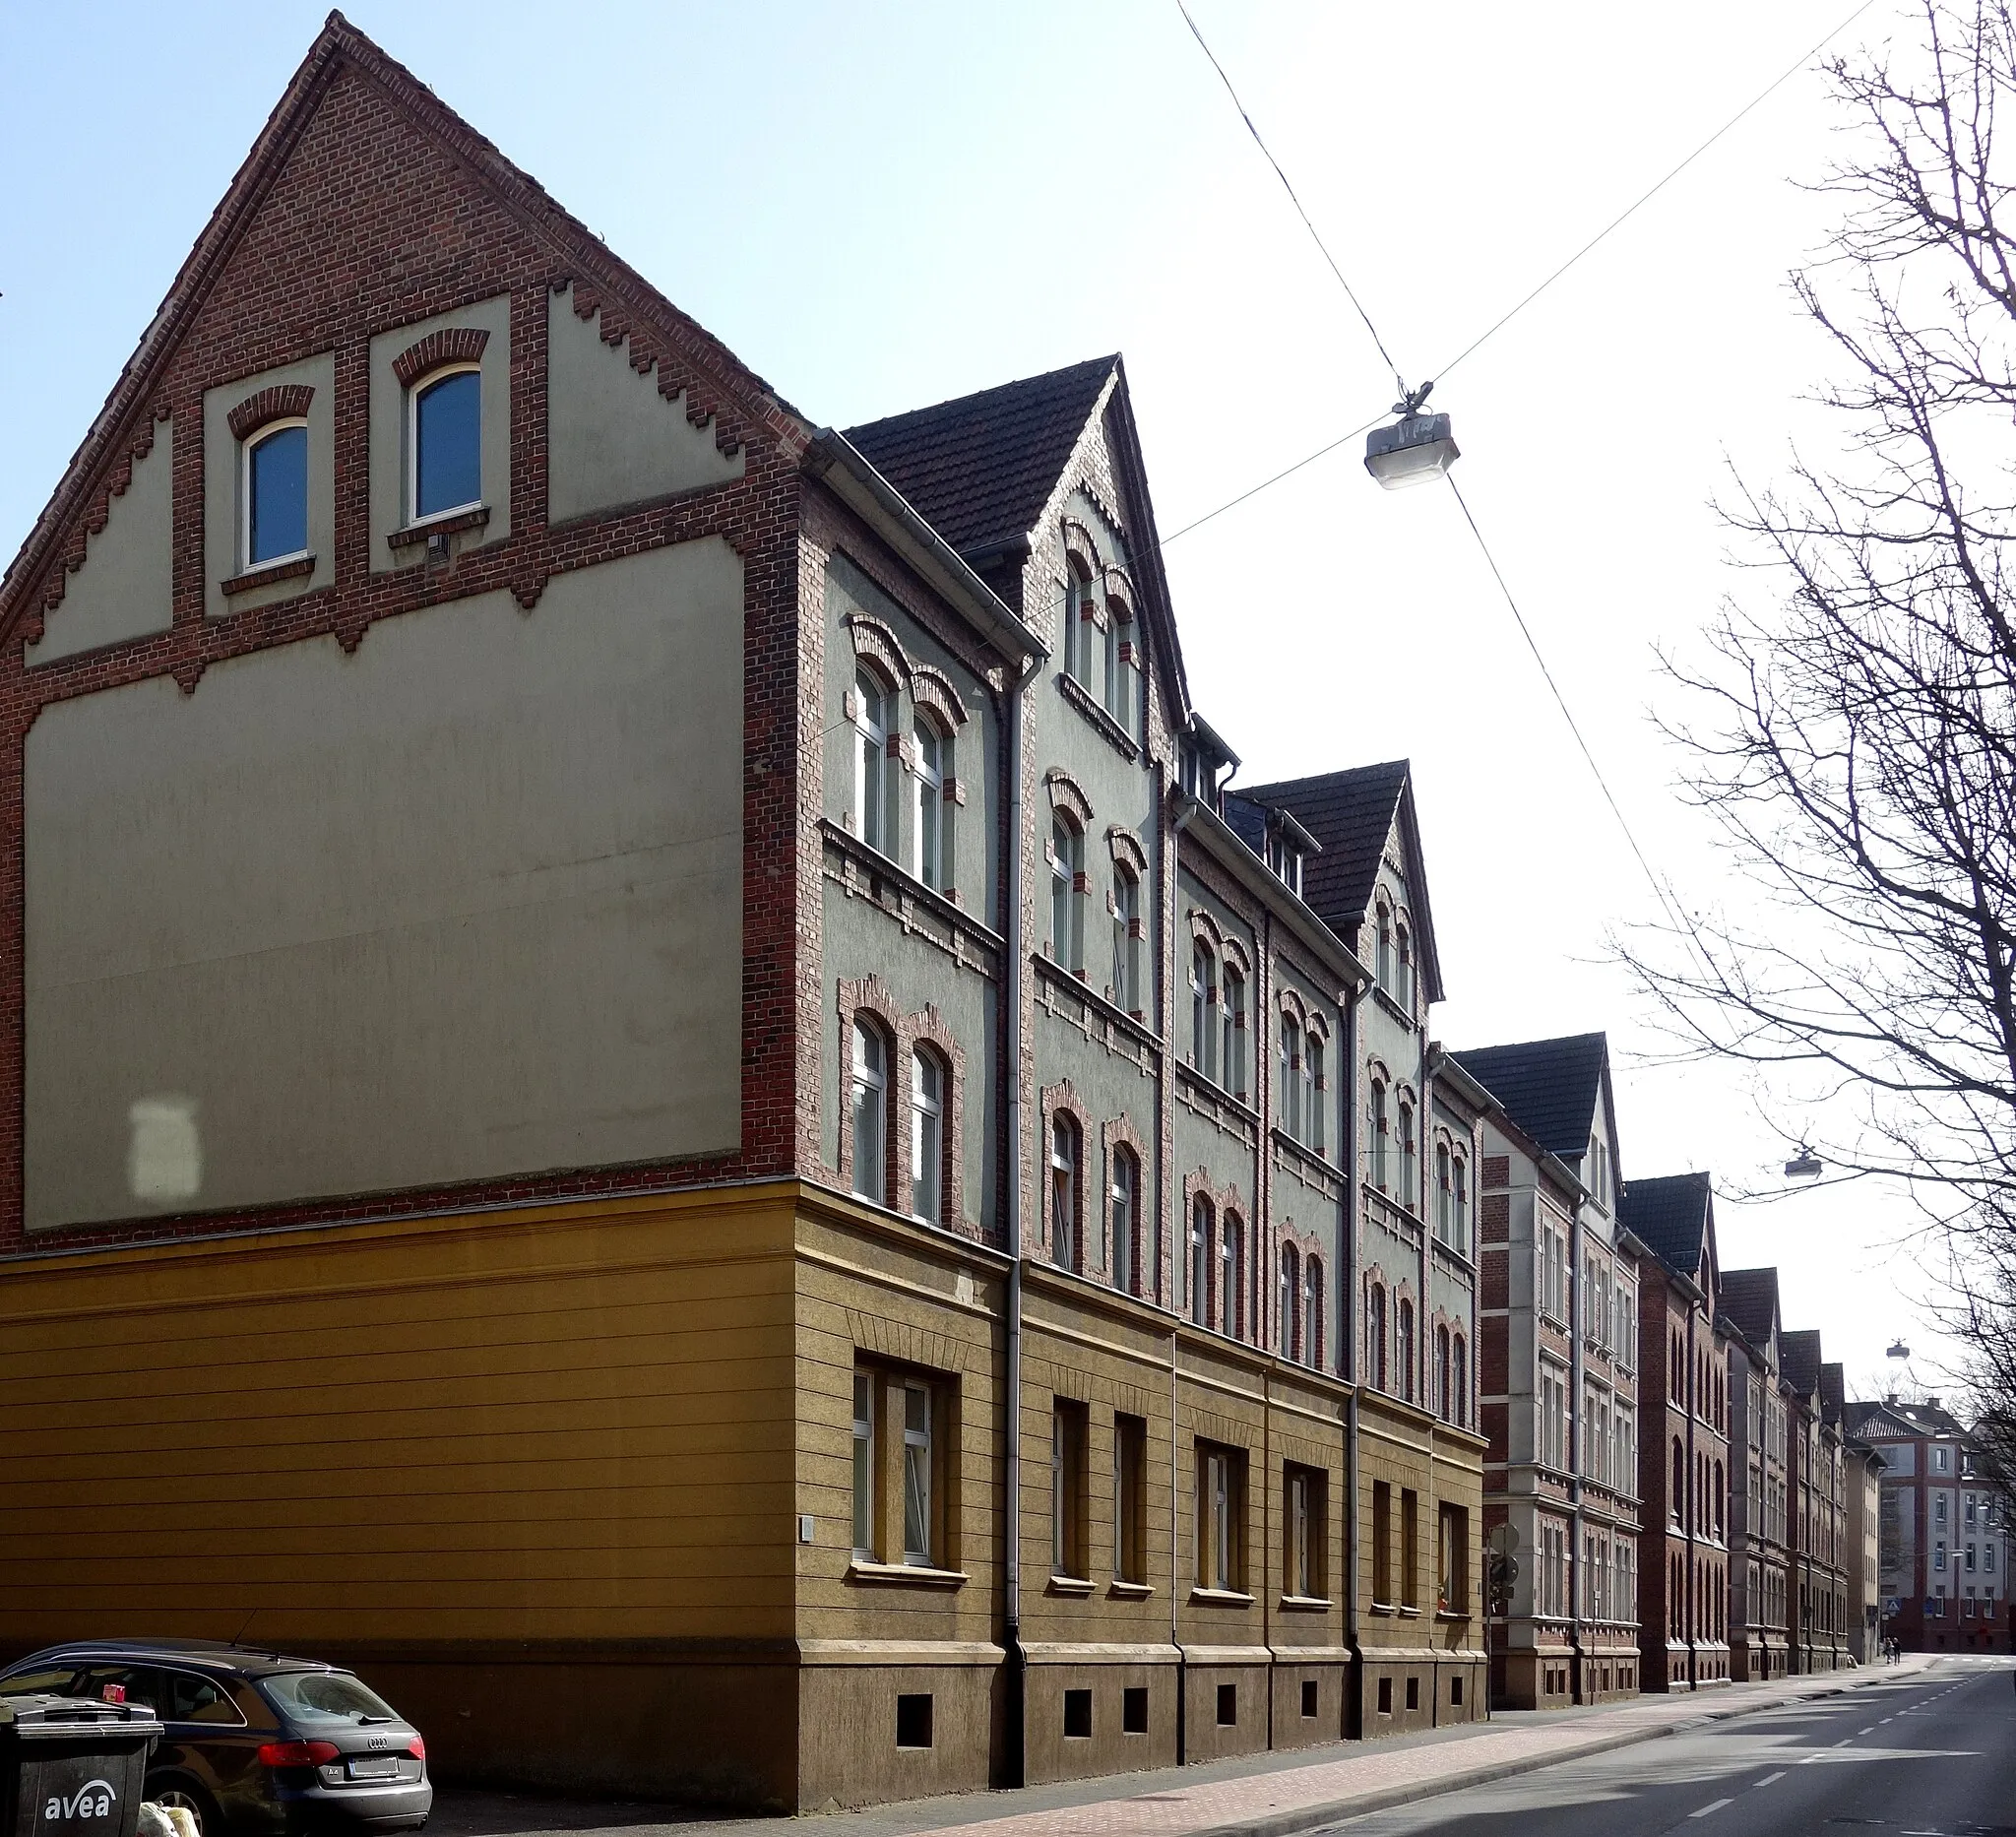 Image de Köln